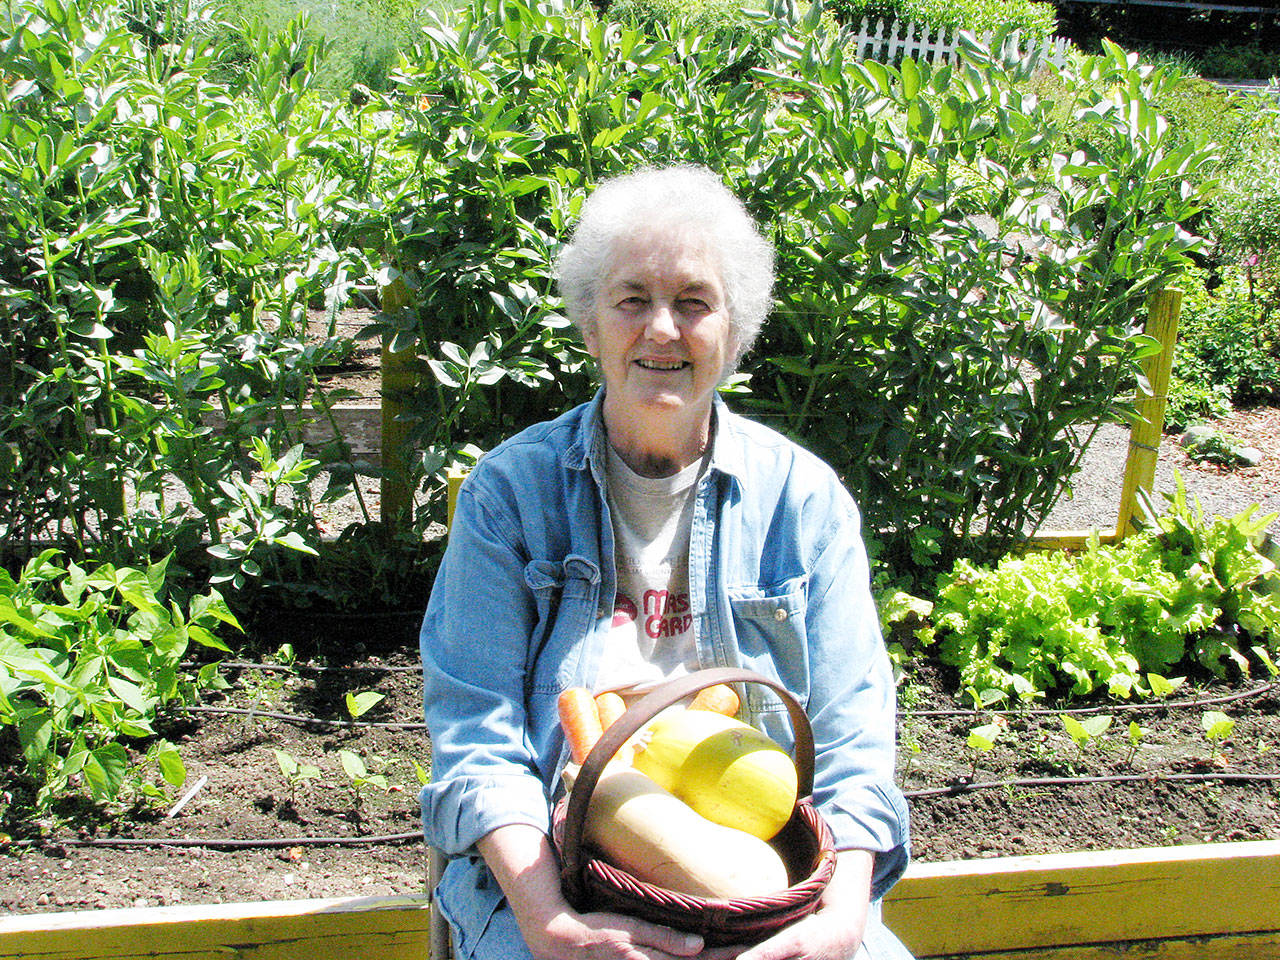 Veteran Master Gardener Muriel Nesbitt presents “Storing the Harvest” at noon Thursday, Aug. 22 in Port Angeles as part of the Green Thumb educational series. (Amanda Rosenberg)